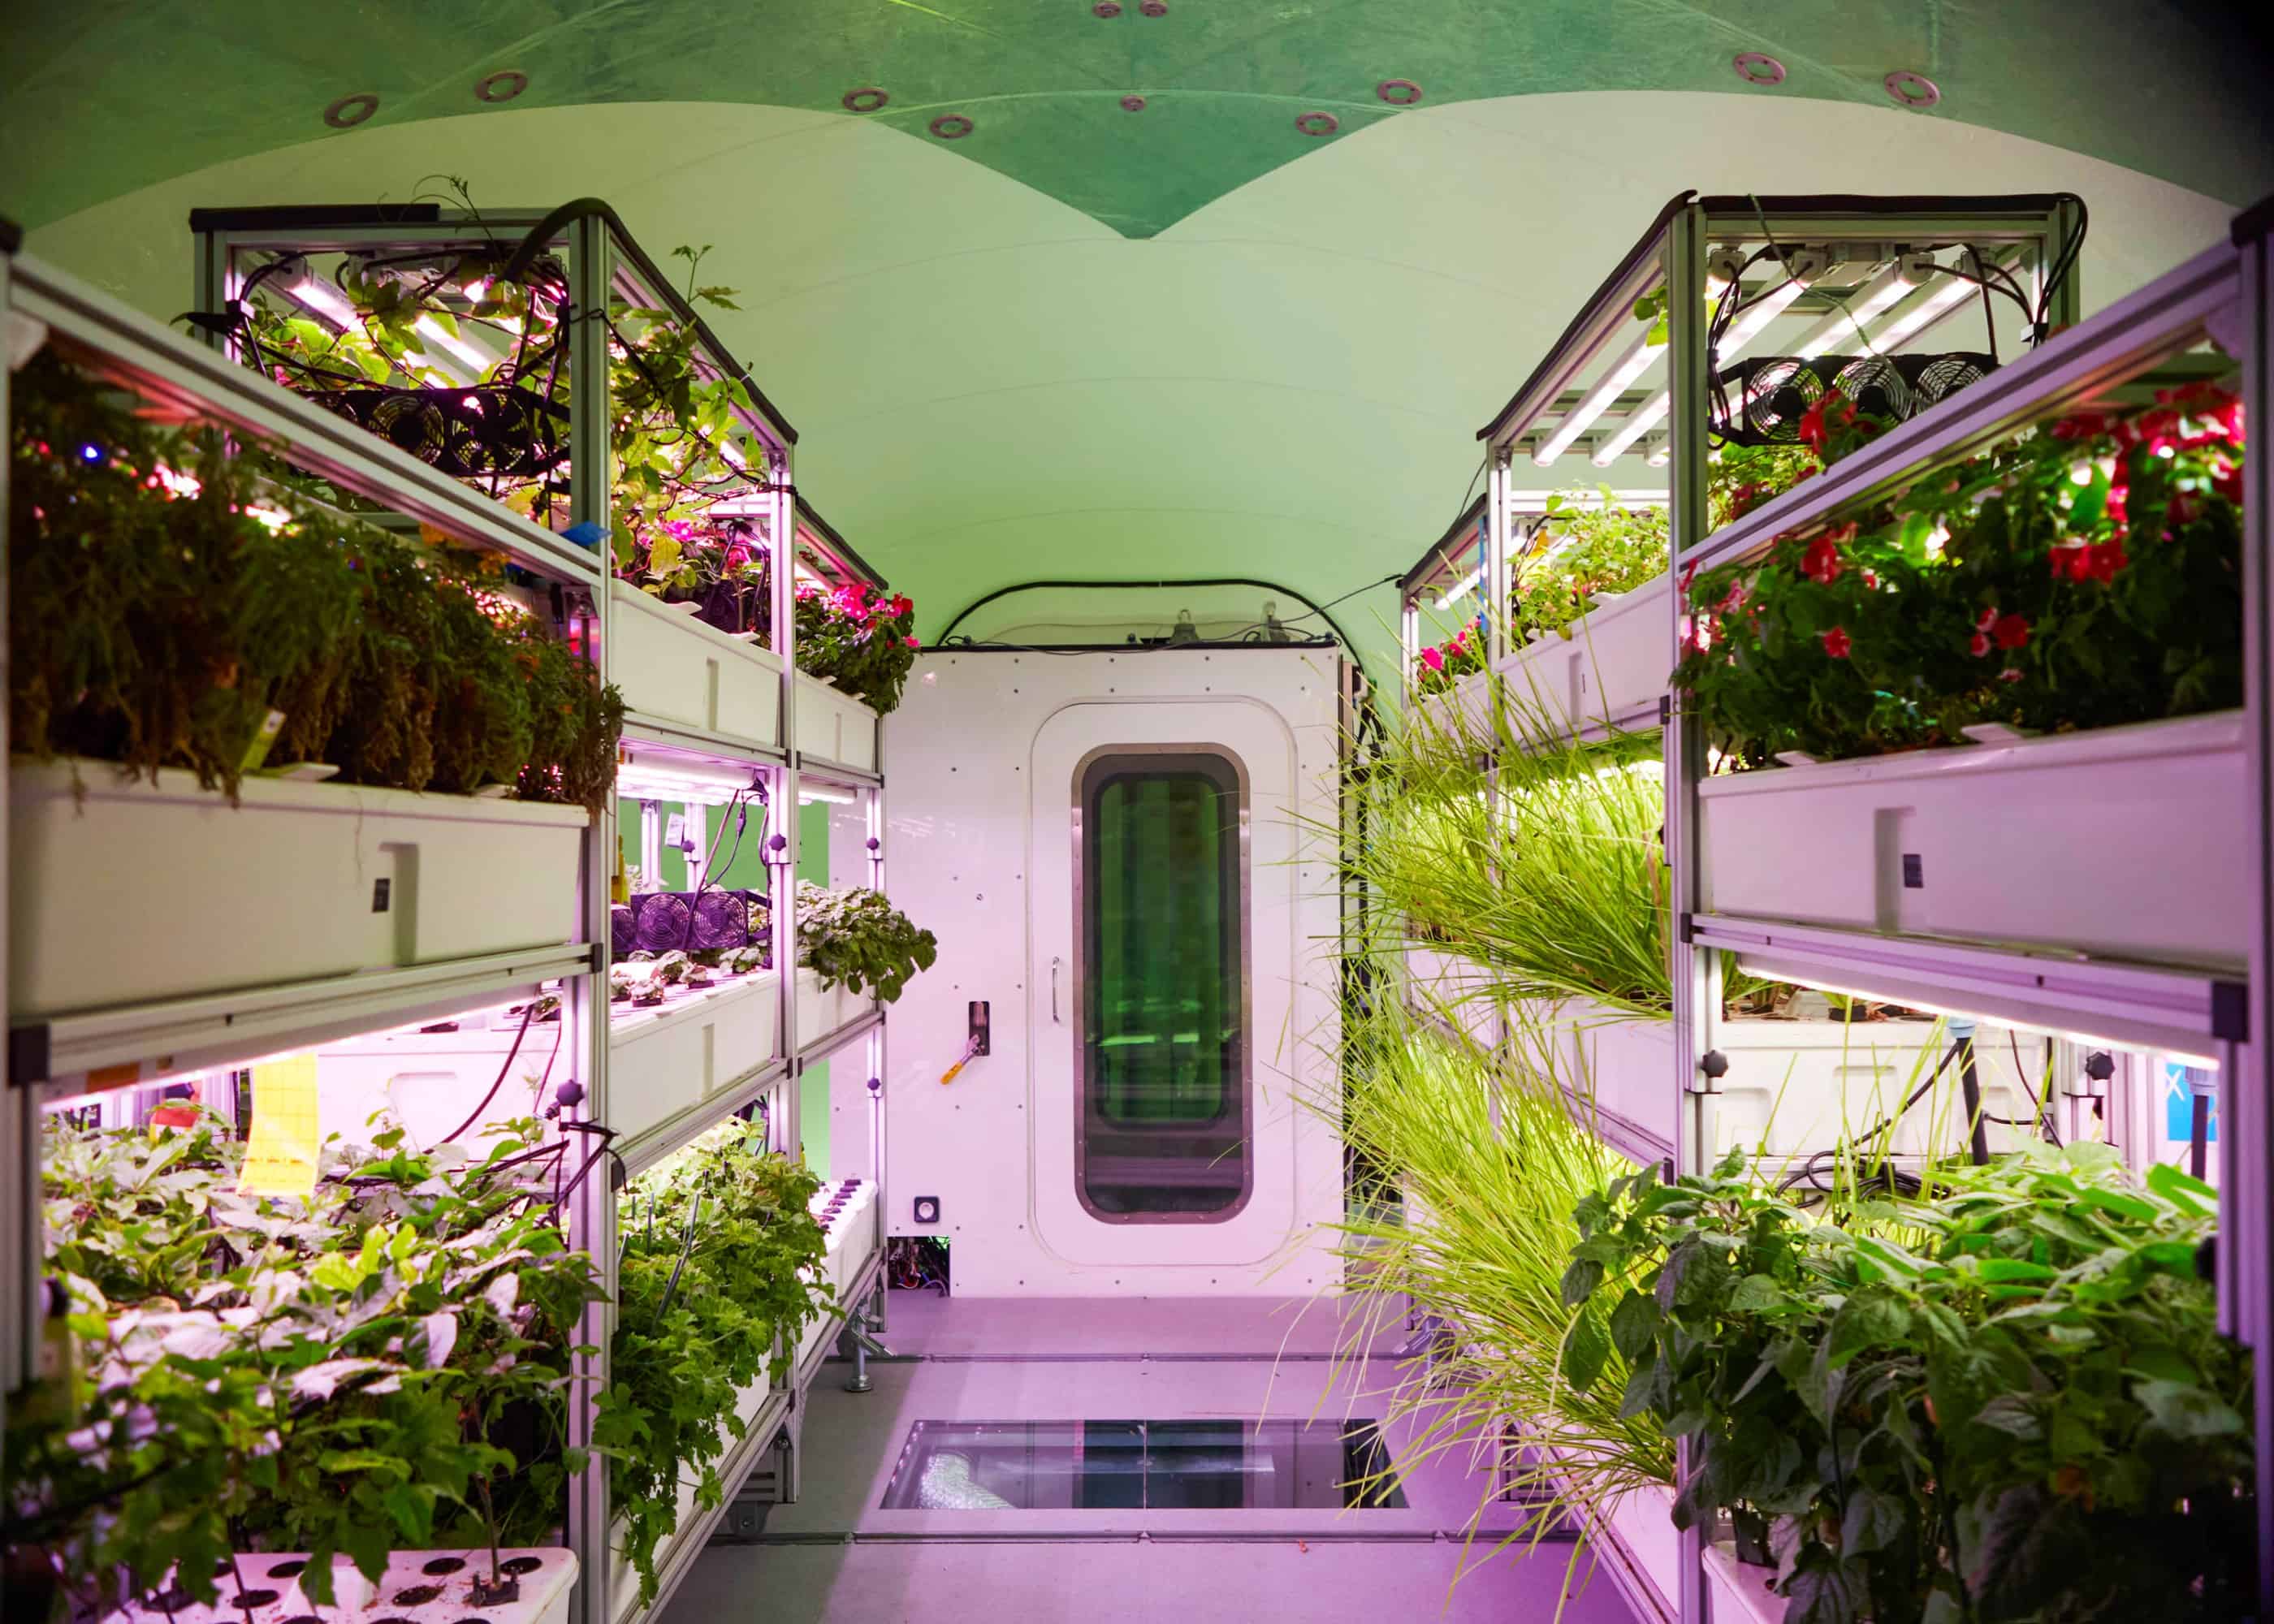 صورة داخلية لنظام بايوبود (BioPod) حيث تتعرض صفوف من النباتات الخضراء الصالحة للأكل إلى إنارة مصابيح الإنماء الاصطناعي